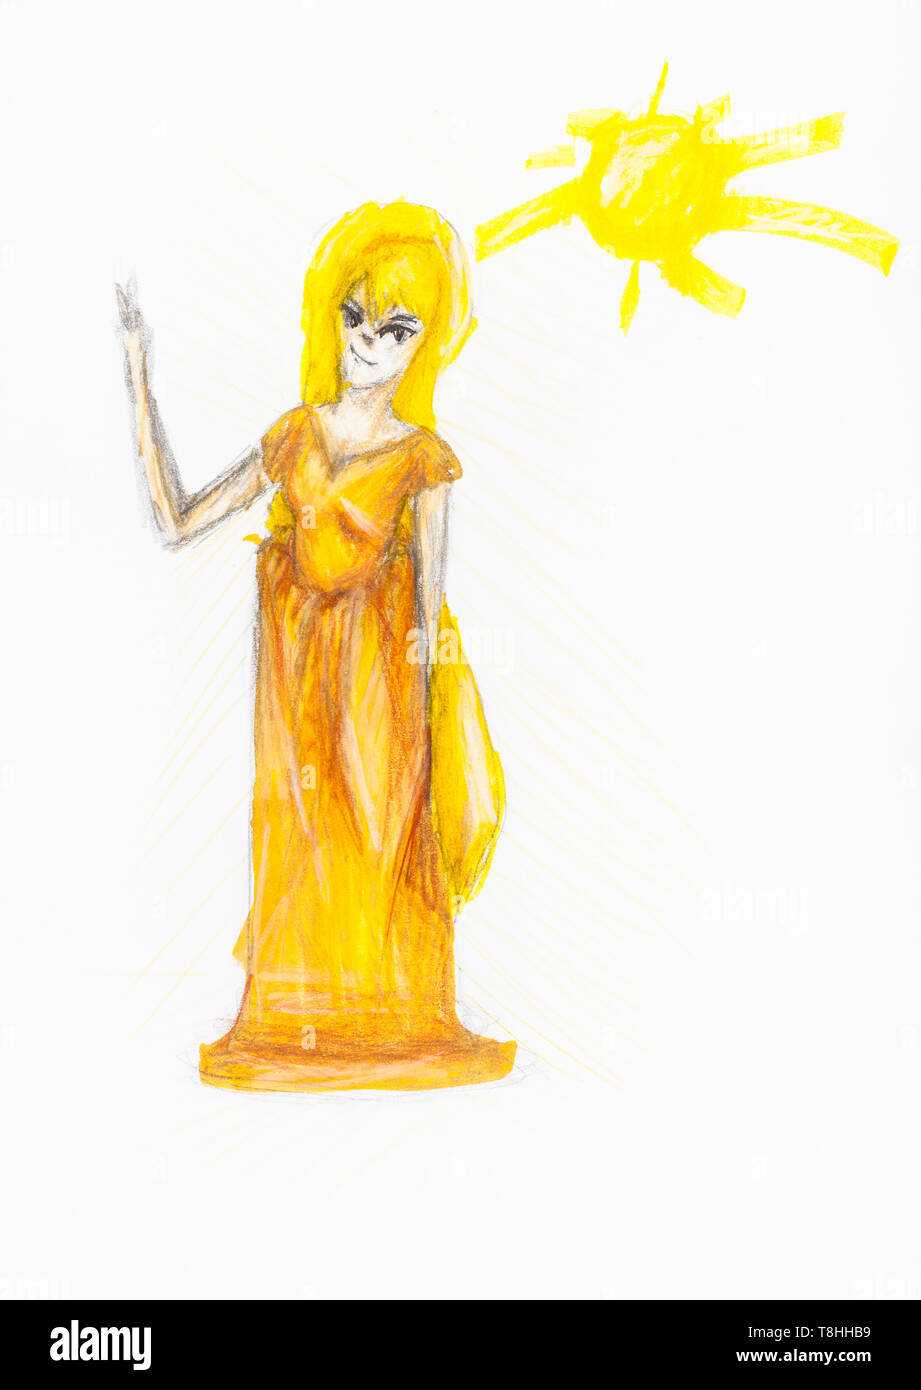 Fairy girl à longue robe jaune à la main par des crayons de couleur sur papier blanc Banque D'Images